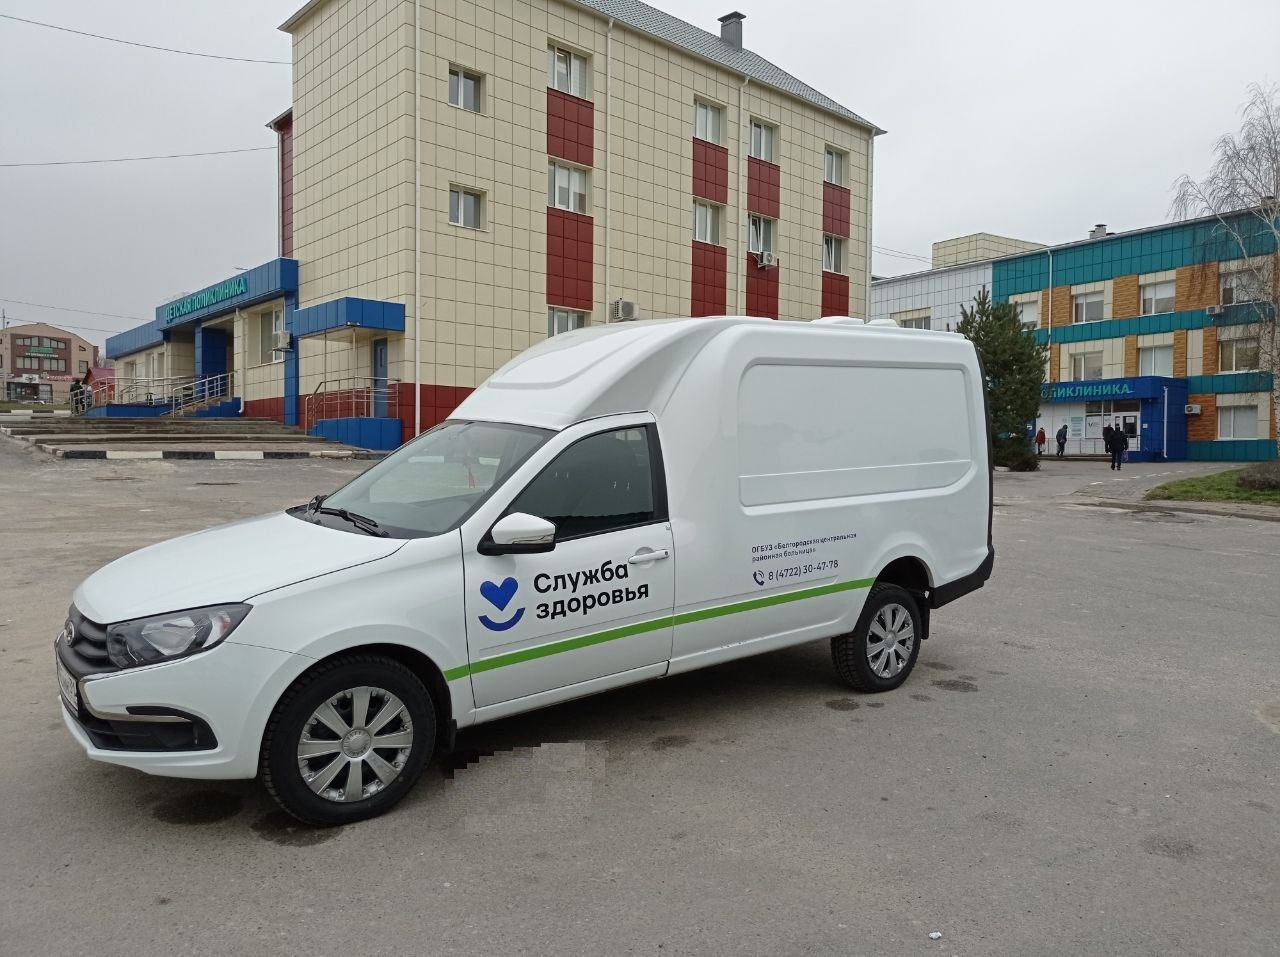 Белгородская центральная районная больница получила ключи от нового автомобиля.